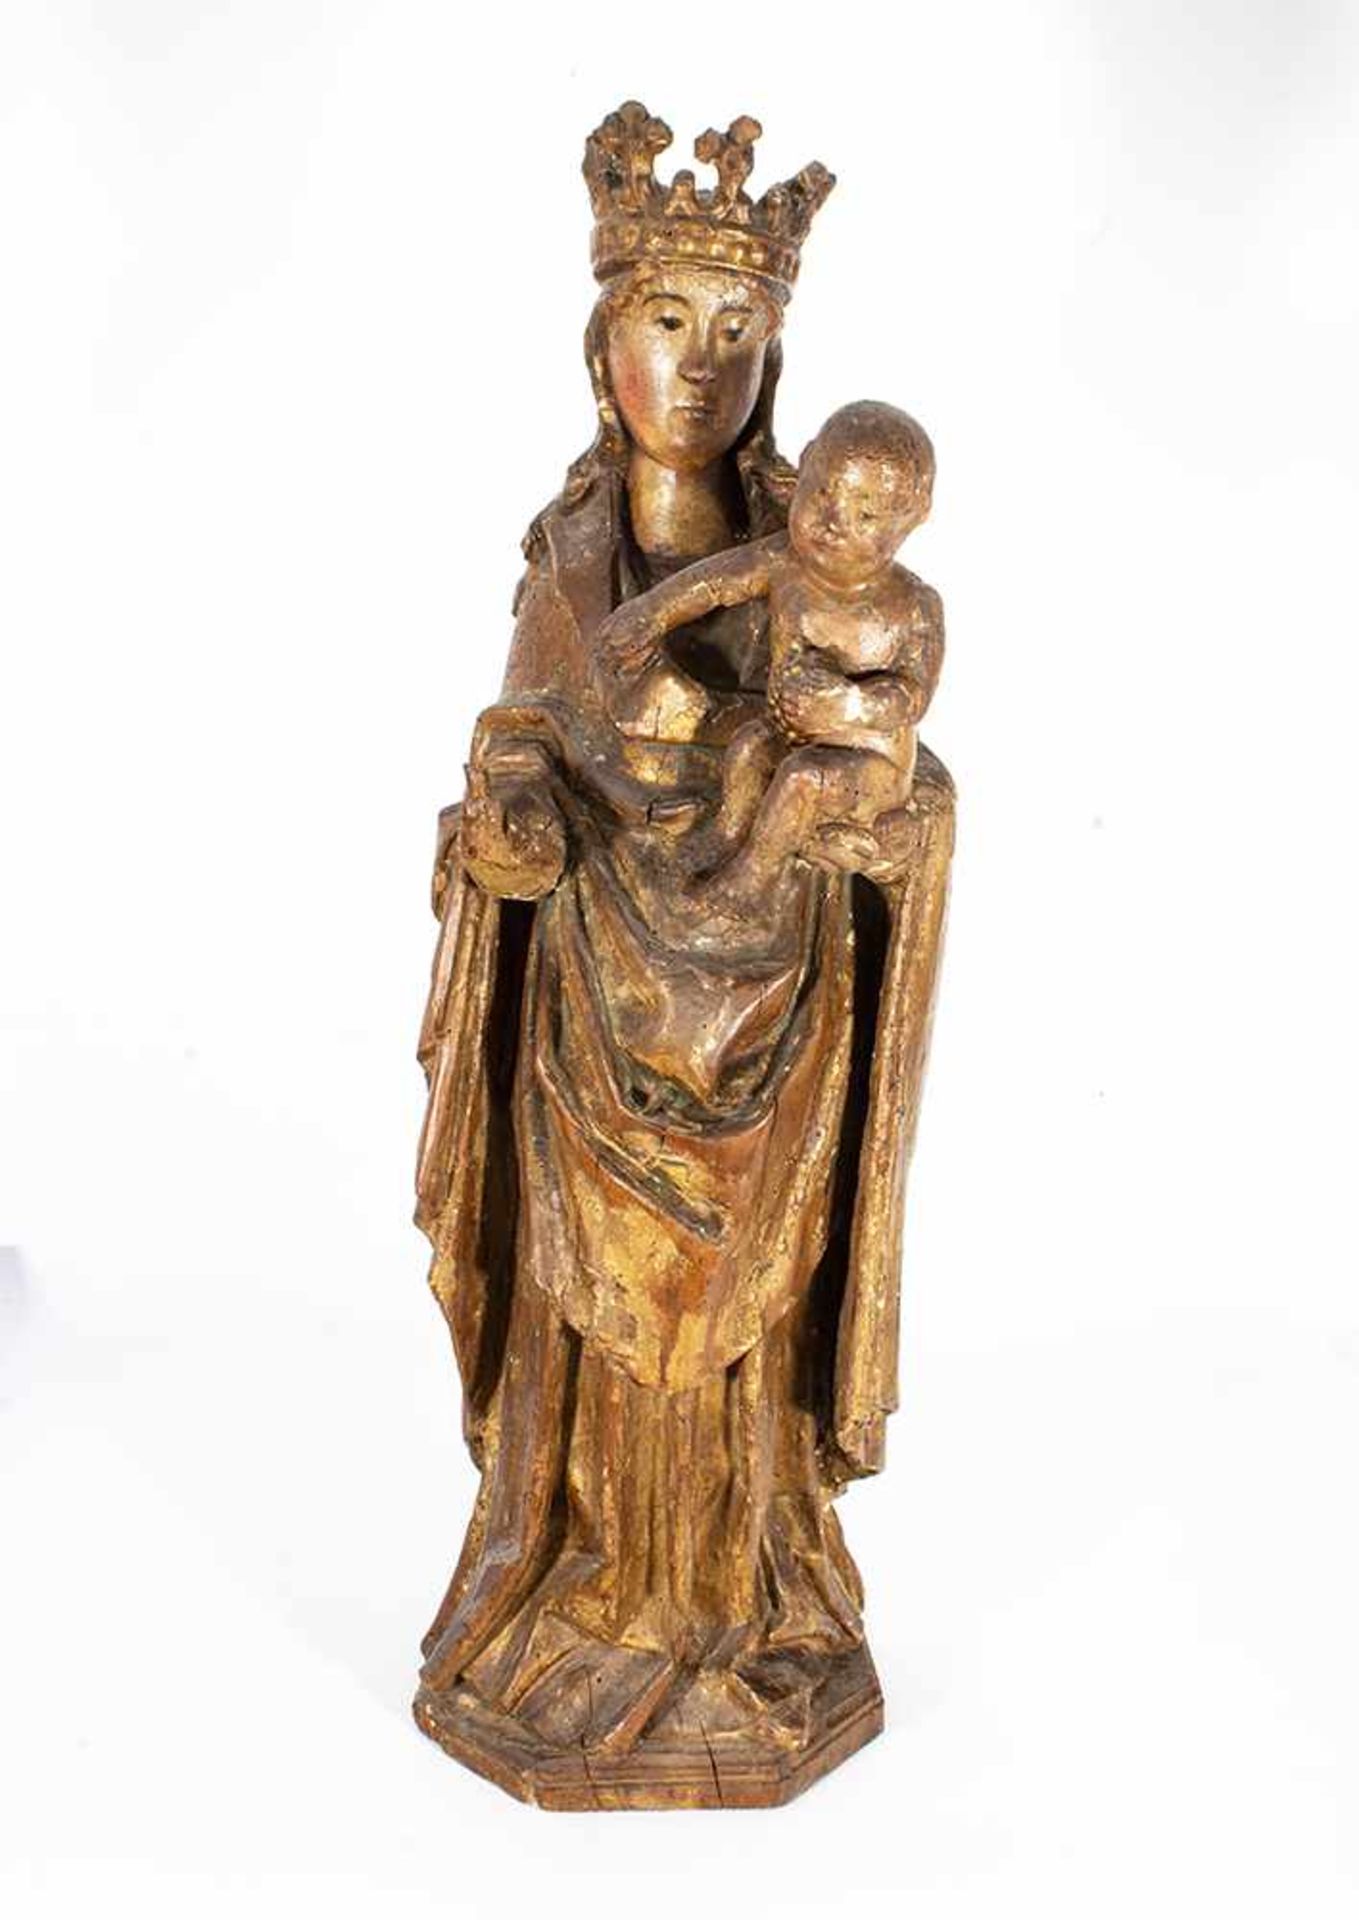 Escuela española de la segunda mitad del siglo XV. "Virgen con Niño".Escuela española de la